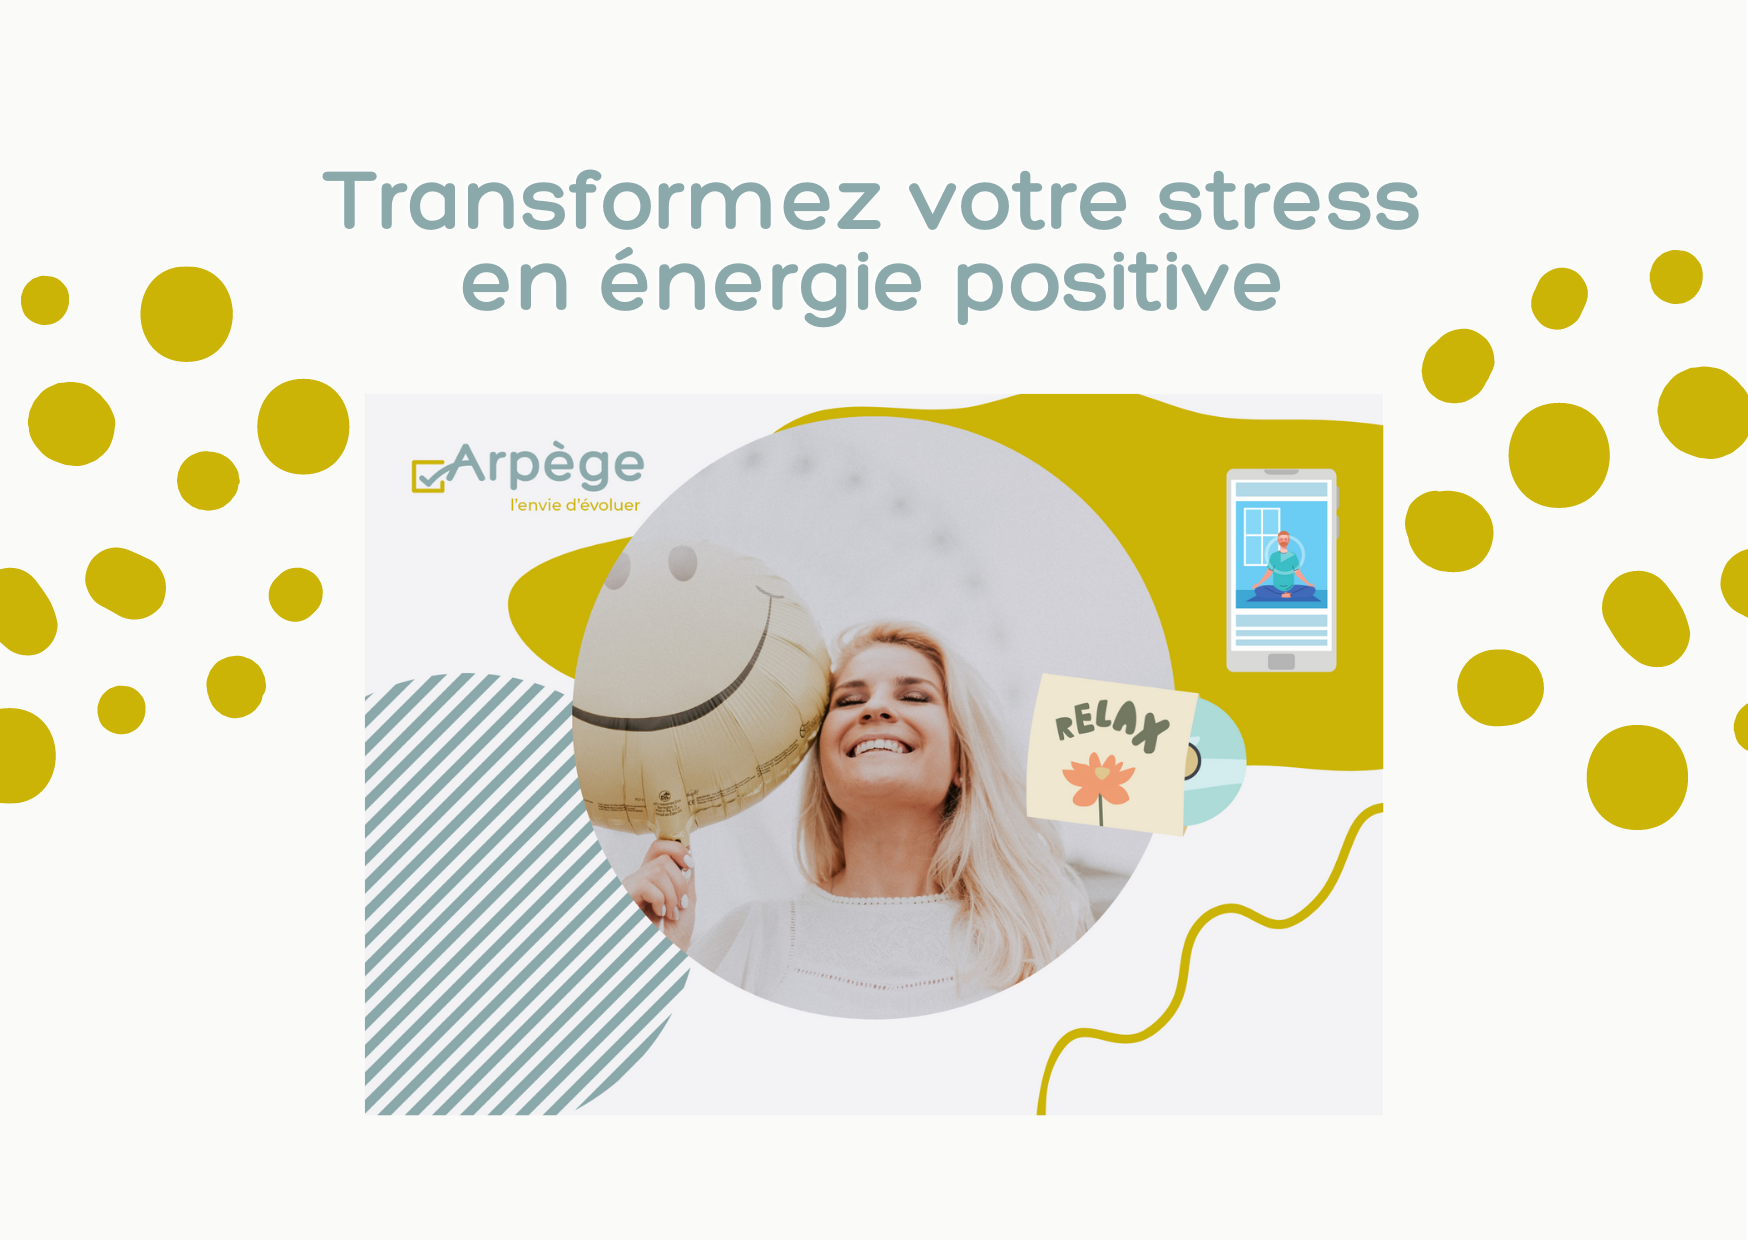 Lire la suite à propos de l’article Transformez votre stress en énergie positive ! 💪